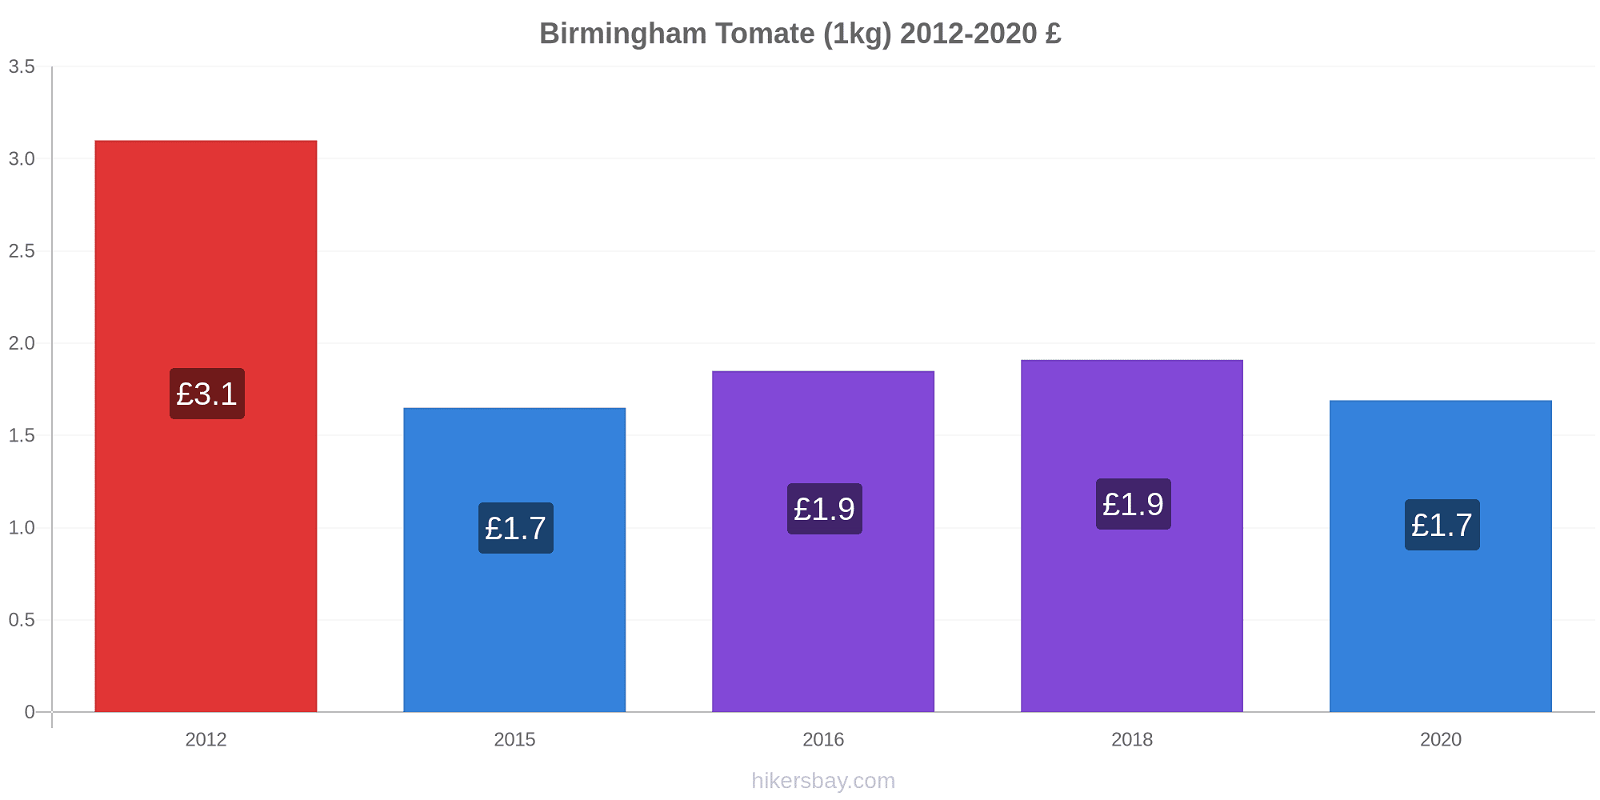 Birmingham changements de prix Tomate (1kg) hikersbay.com